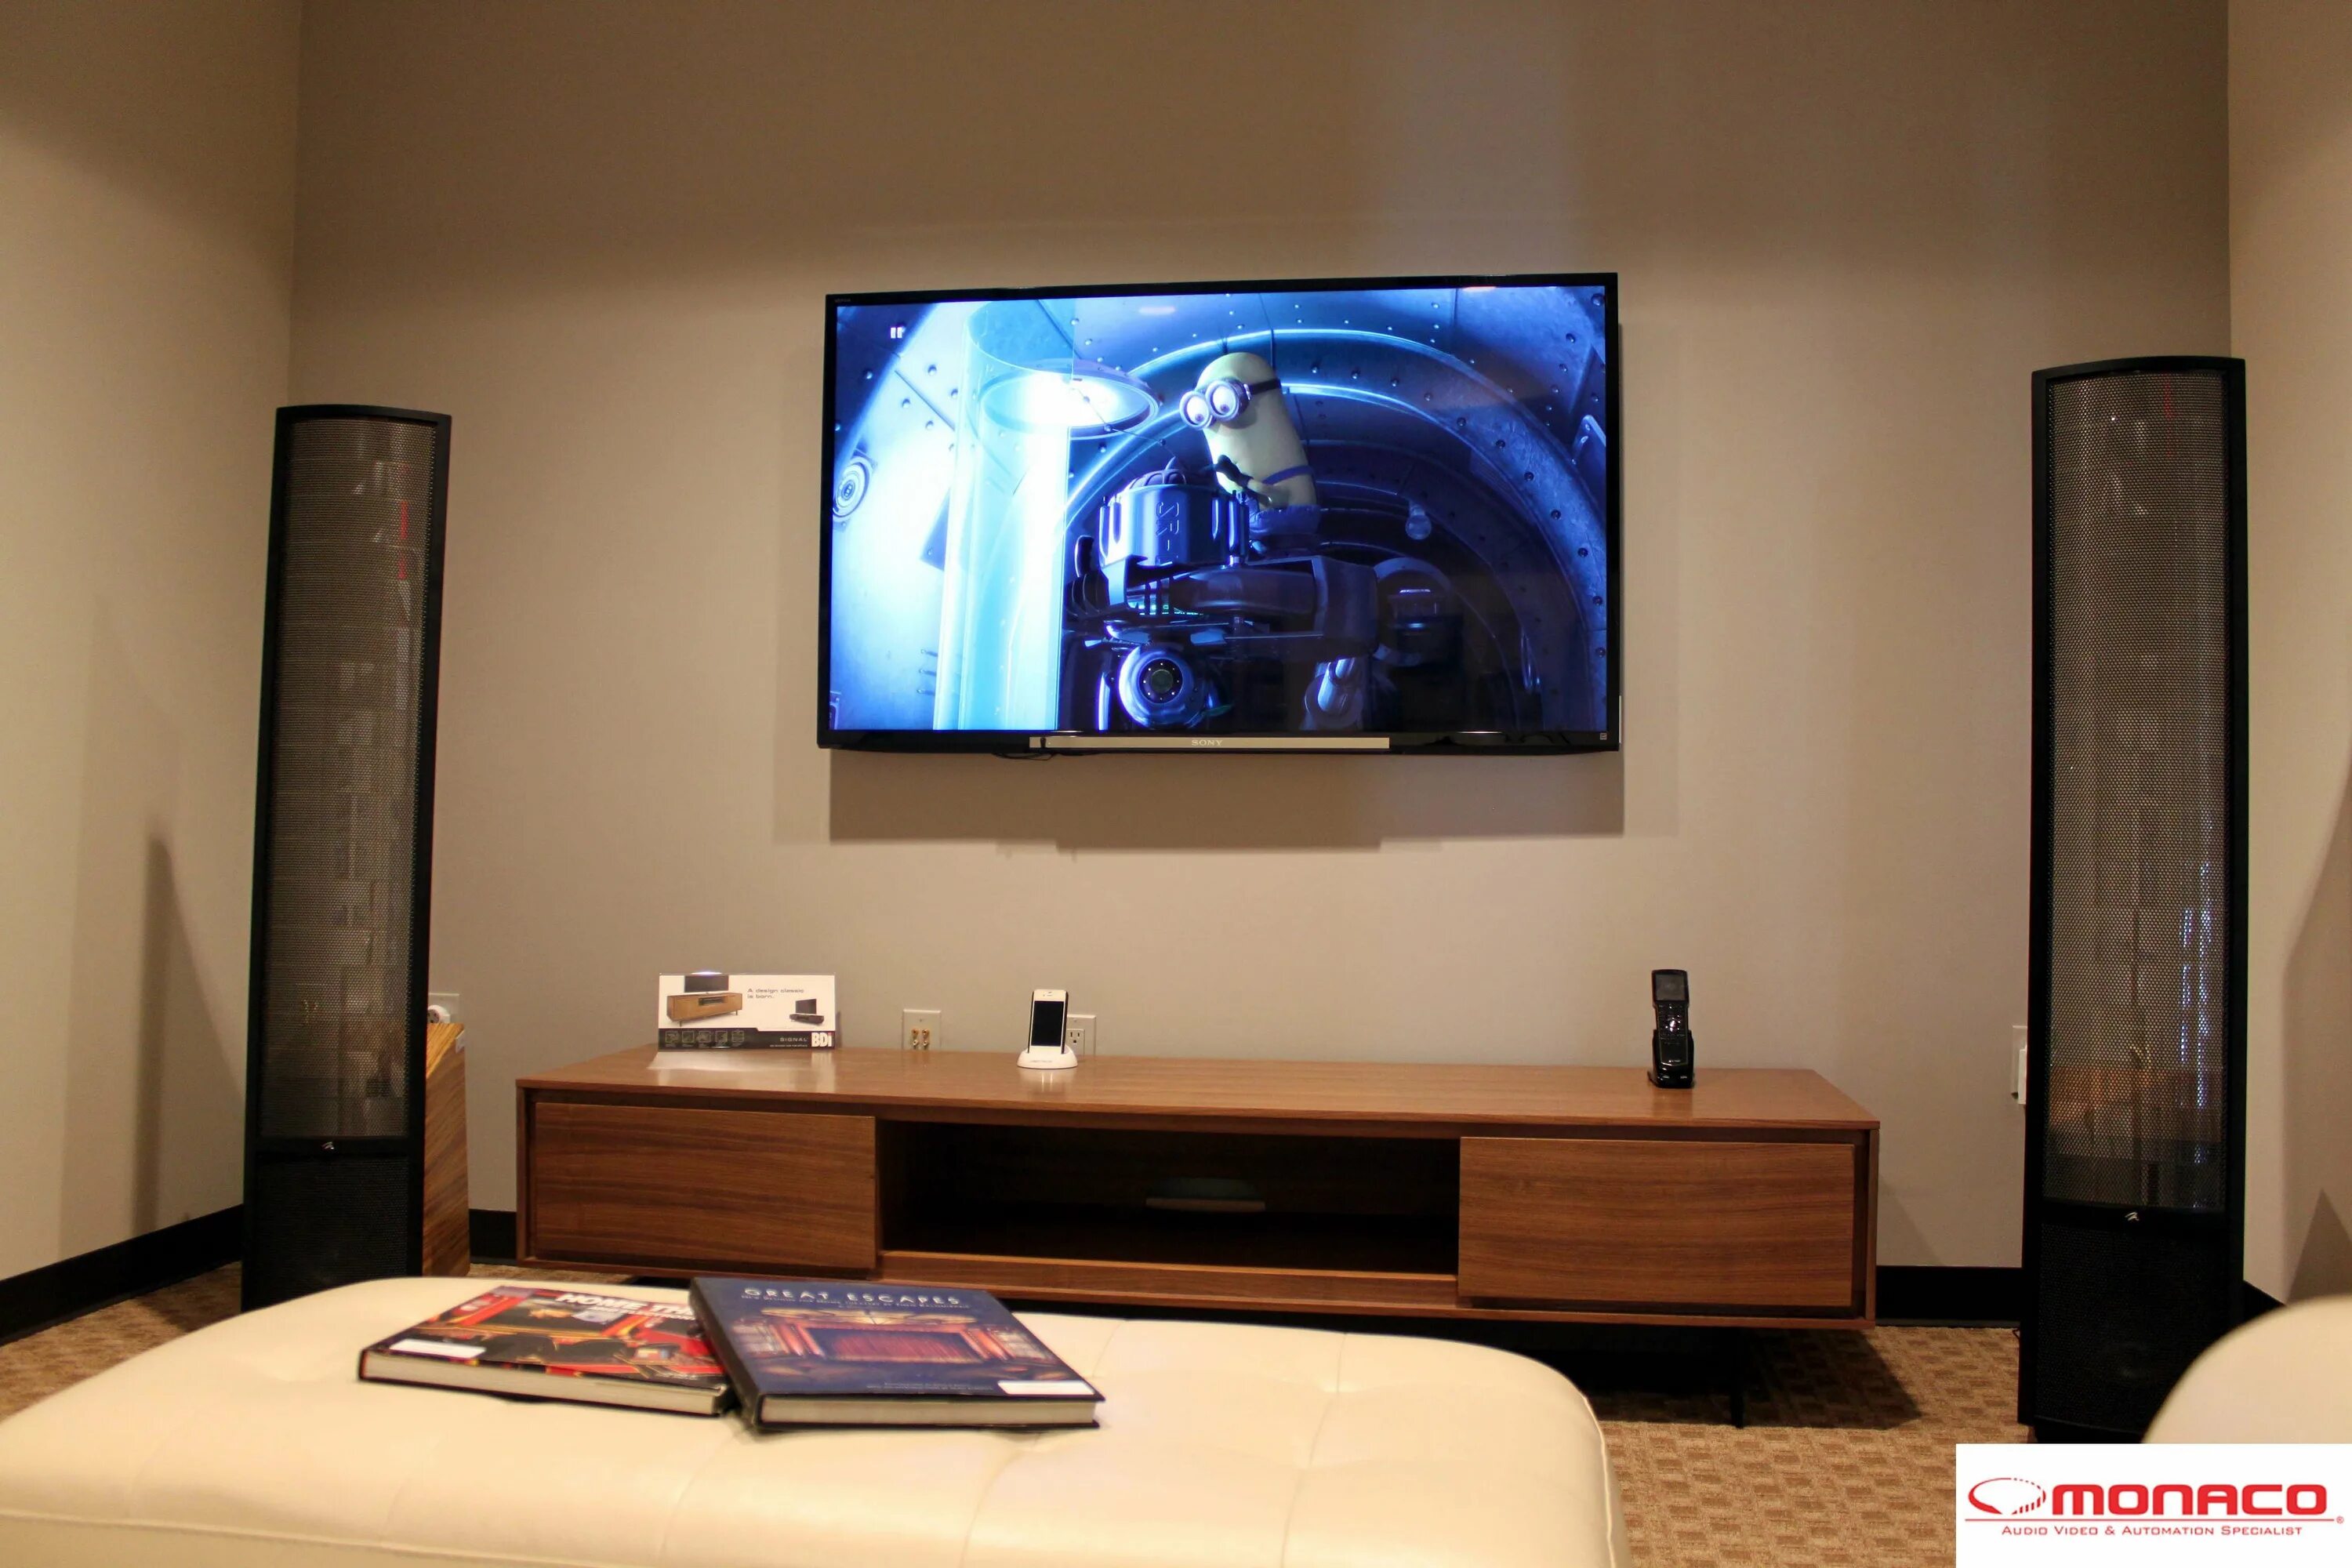 Включи телевизор в зале. Комната с телевизором. Комната с большим телевизором. Телевизор в квартире. Большой телевизор на стене.